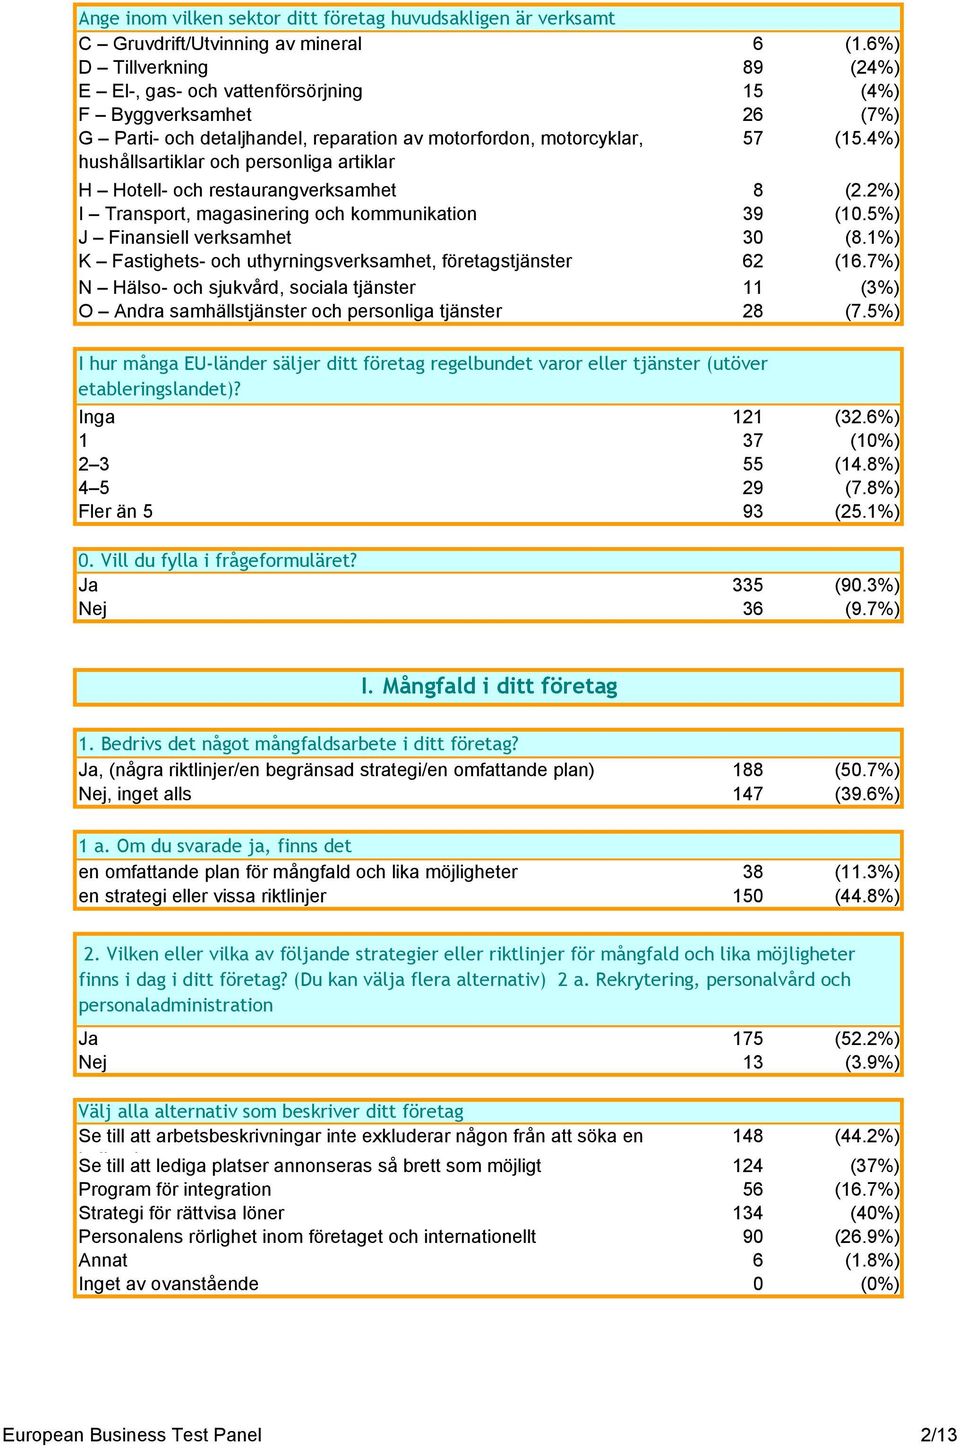 4%) hushållsartiklar och personliga artiklar H Hotell- och restaurangverksamhet 8 (2.2%) I Transport, magasinering och kommunikation 39 (10.5%) J Finansiell verksamhet 30 (8.